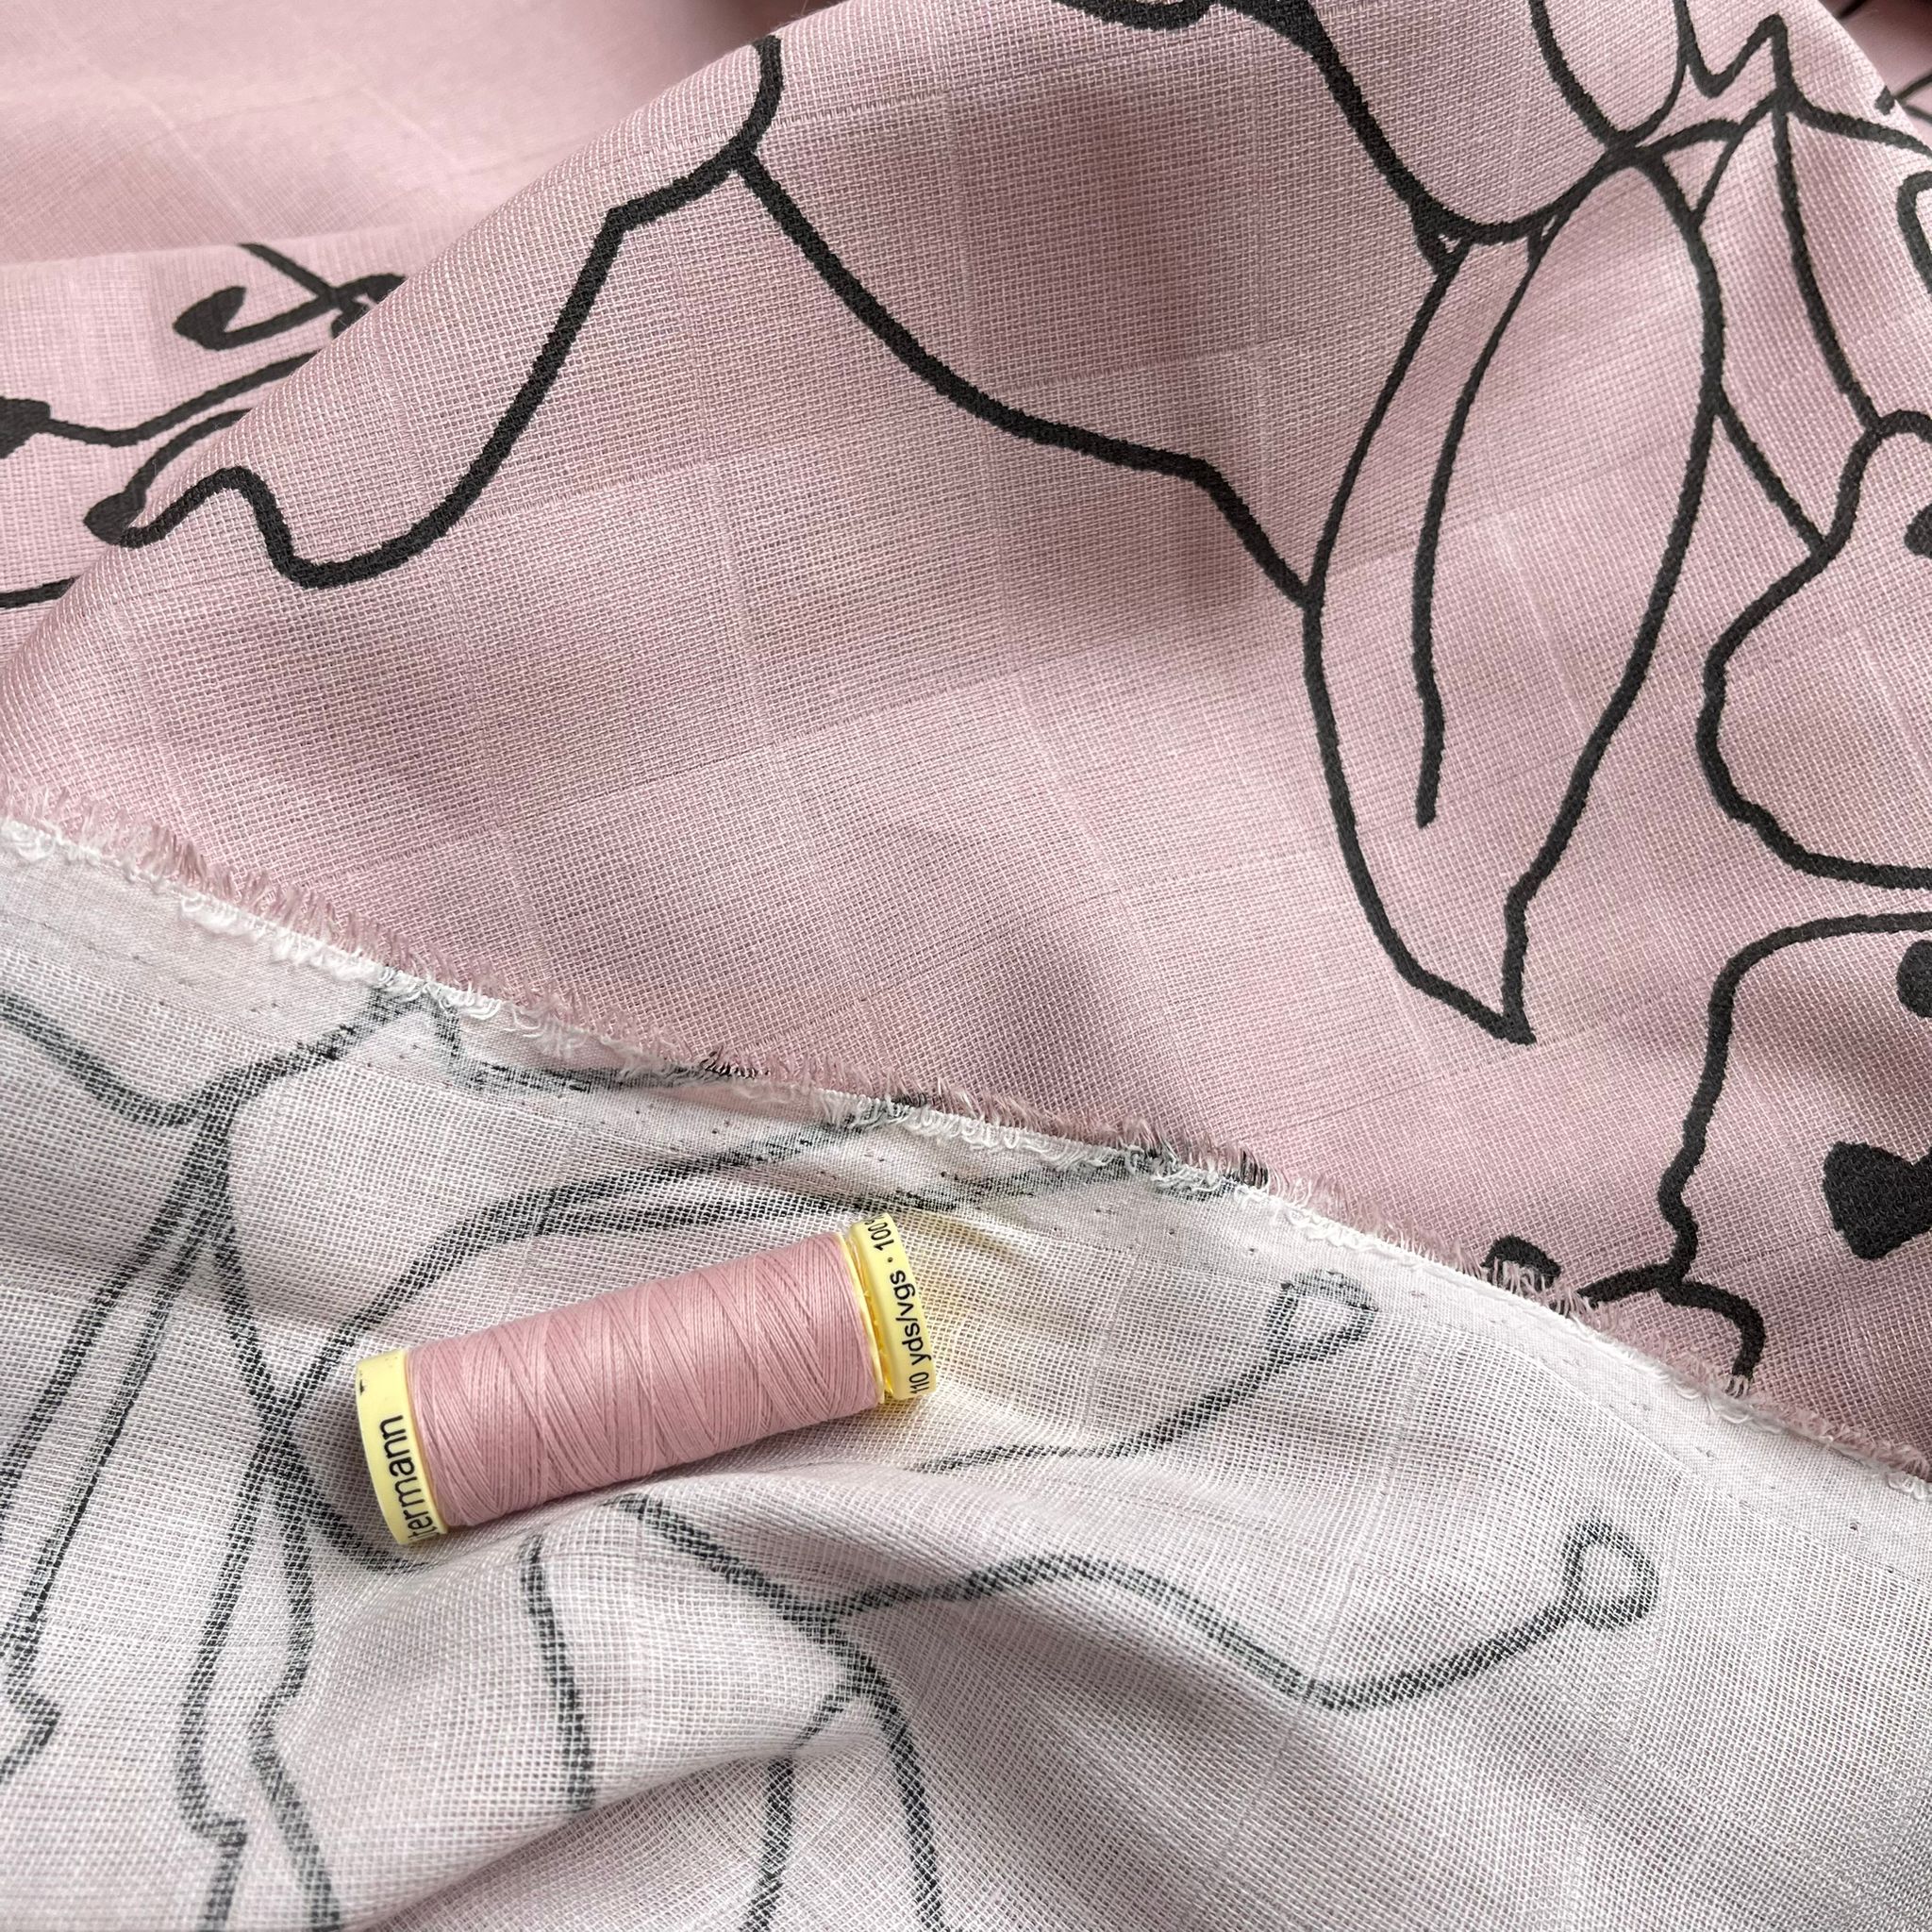 Fibre Mood Floral Outline on Pink Cotton Double Gauze